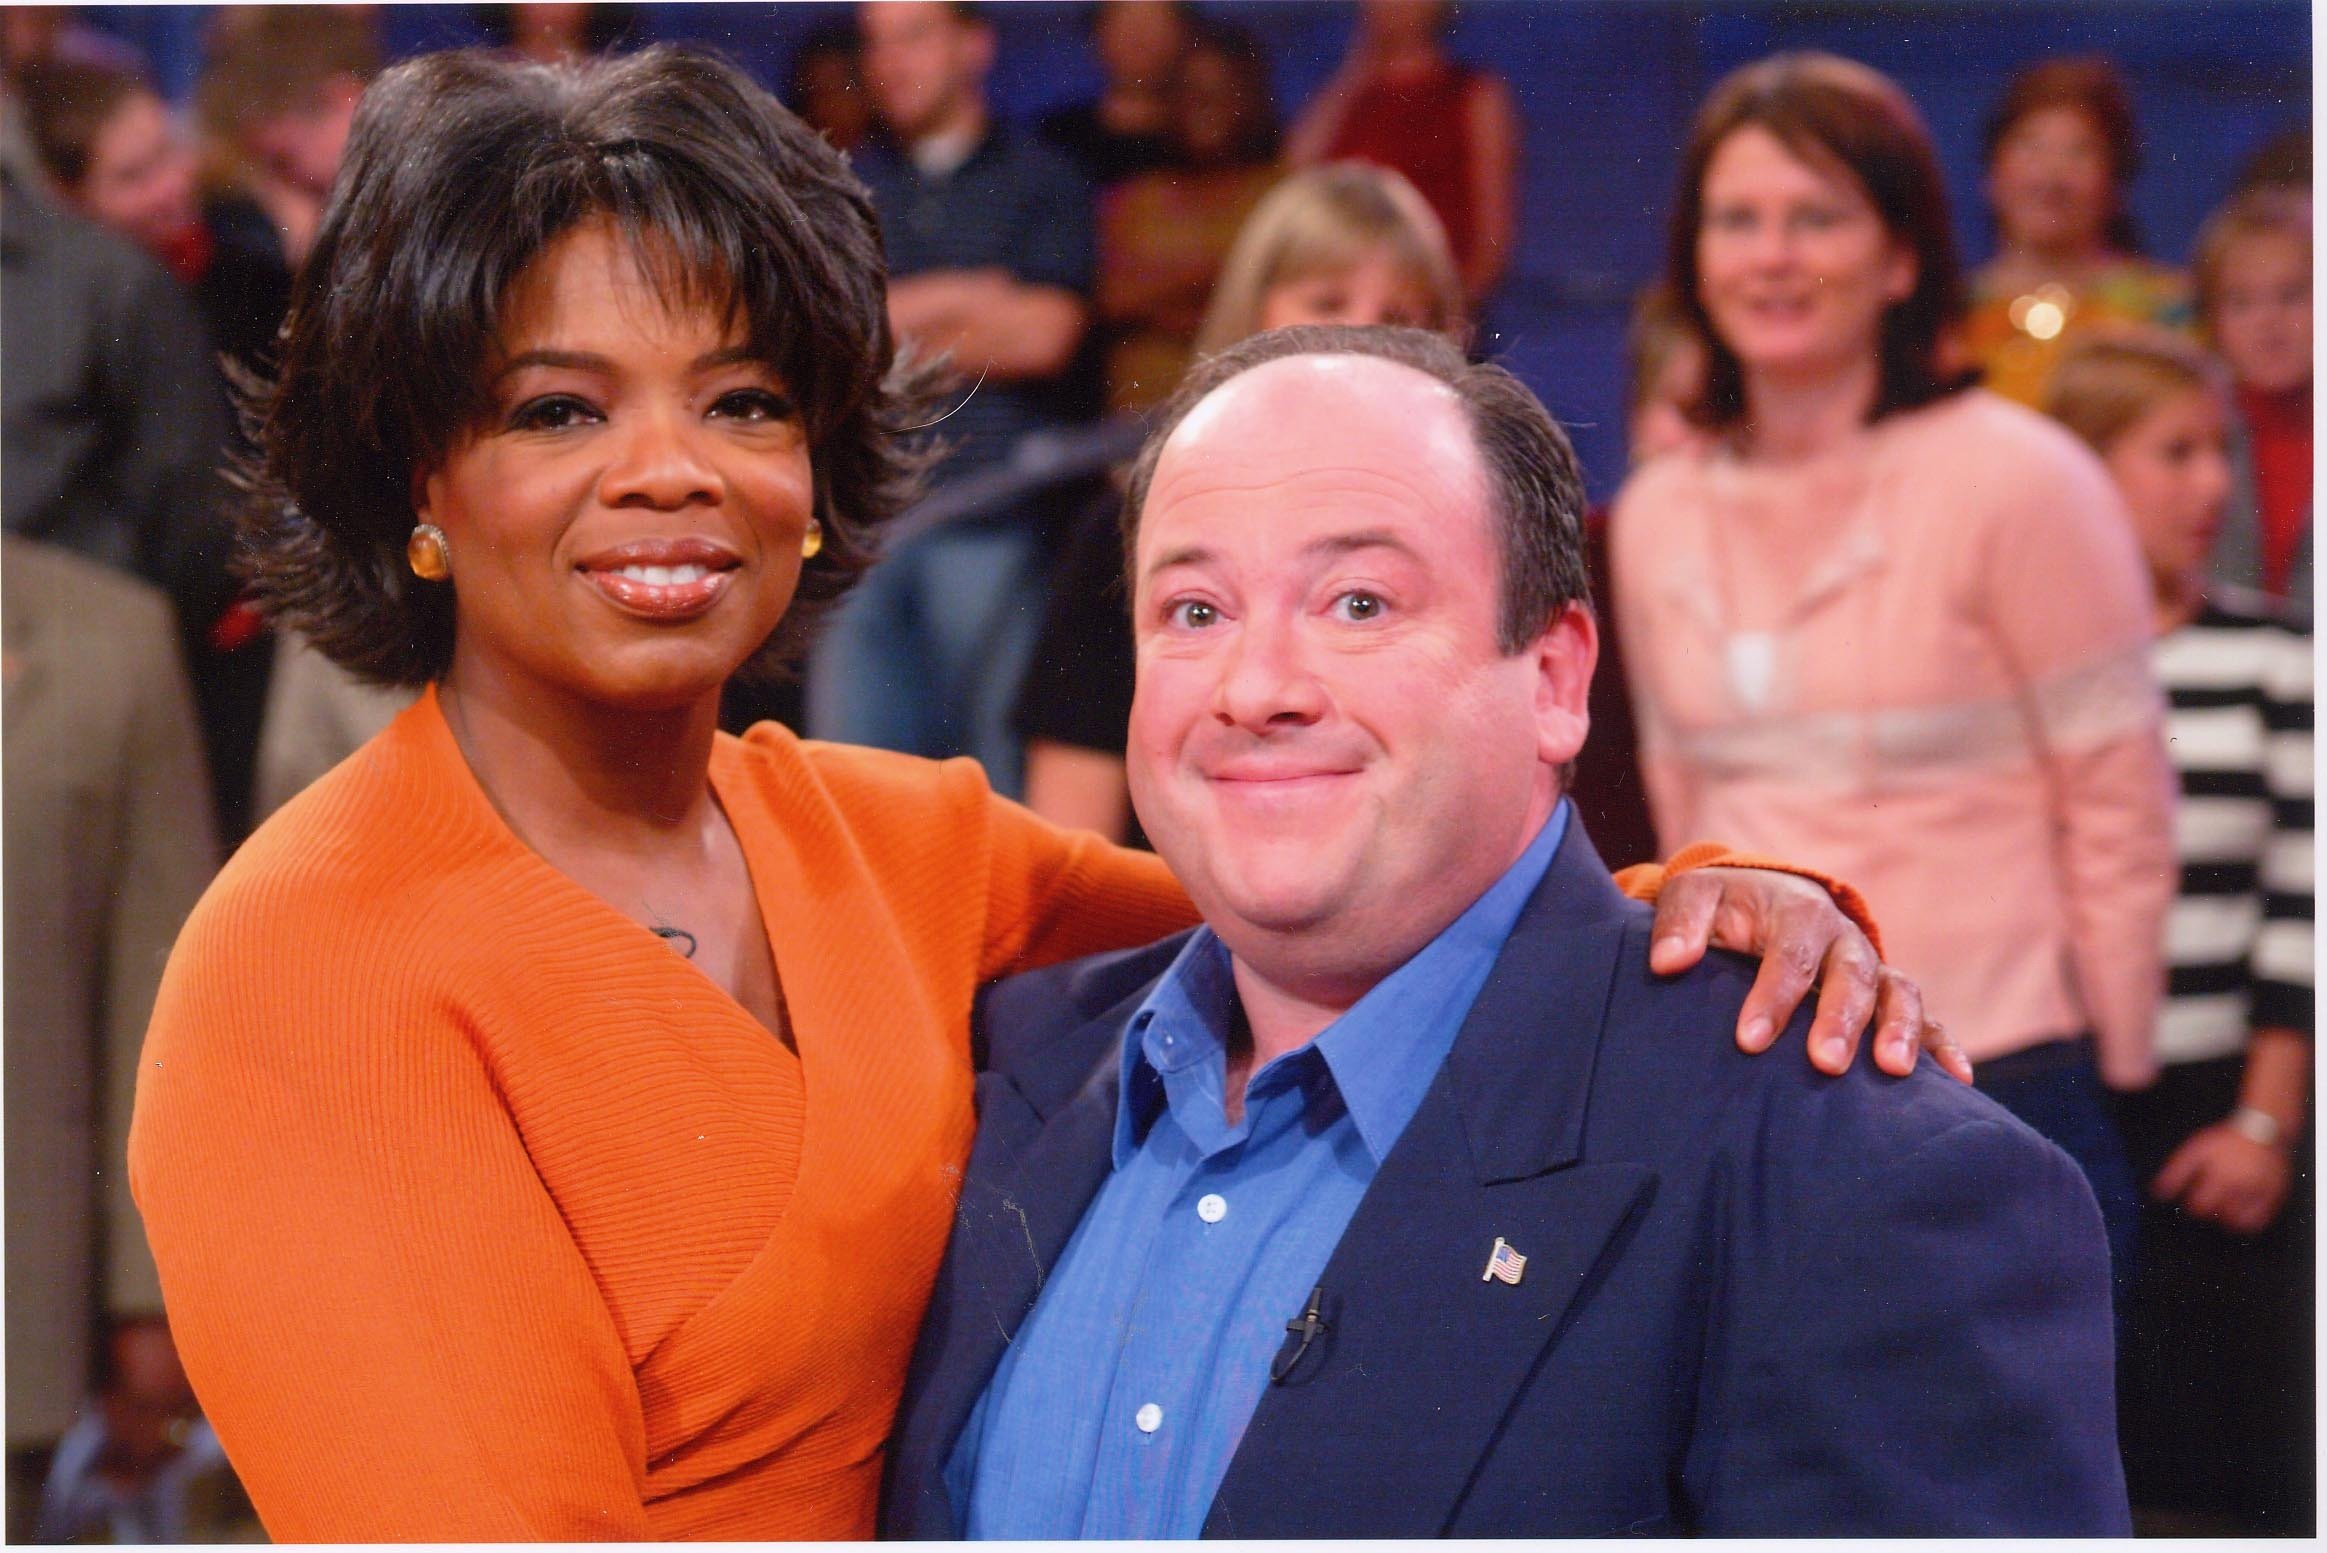 Guest on The Oprah Winfrey Show